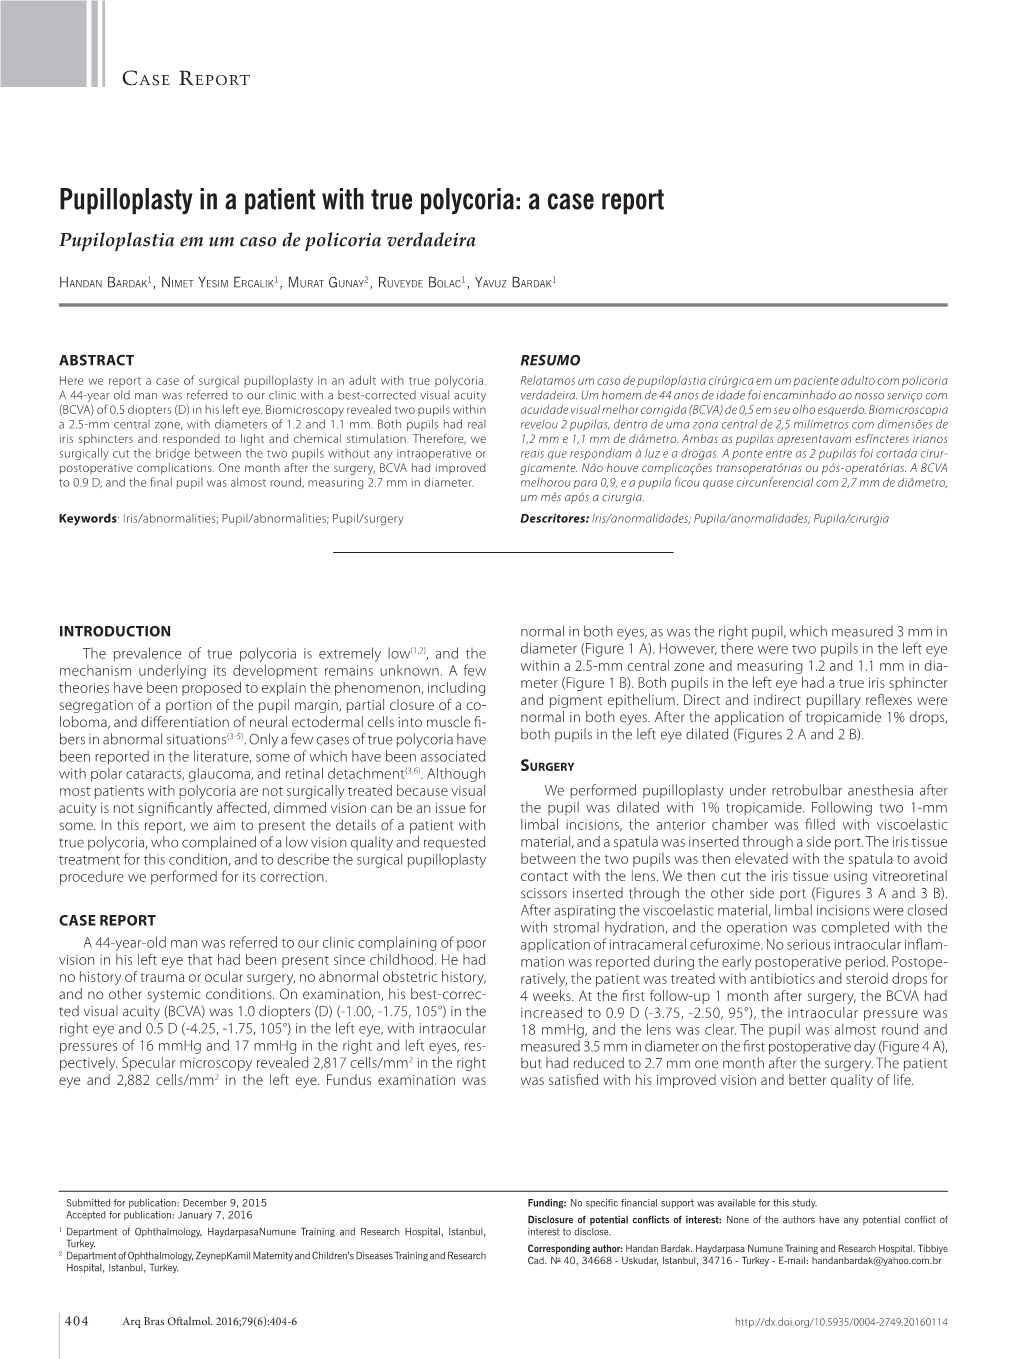 Pupilloplasty in a Patient with True Polycoria: a Case Report Pupiloplastia Em Um Caso De Policoria Verdadeira